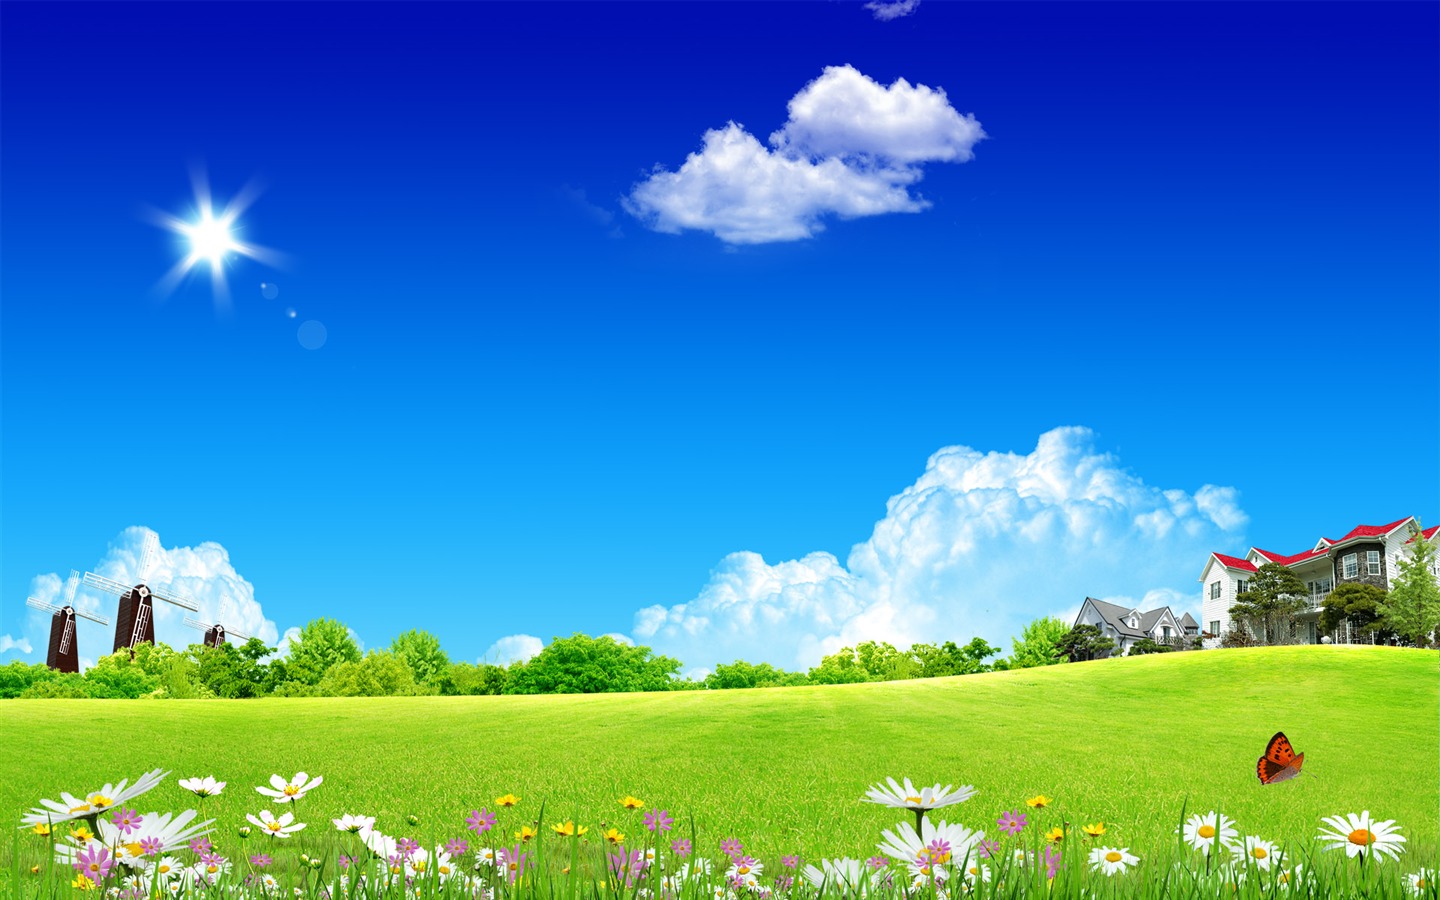 Photoshopの日当たりの良い夏の風景の壁紙 (2) #3 - 1440x900